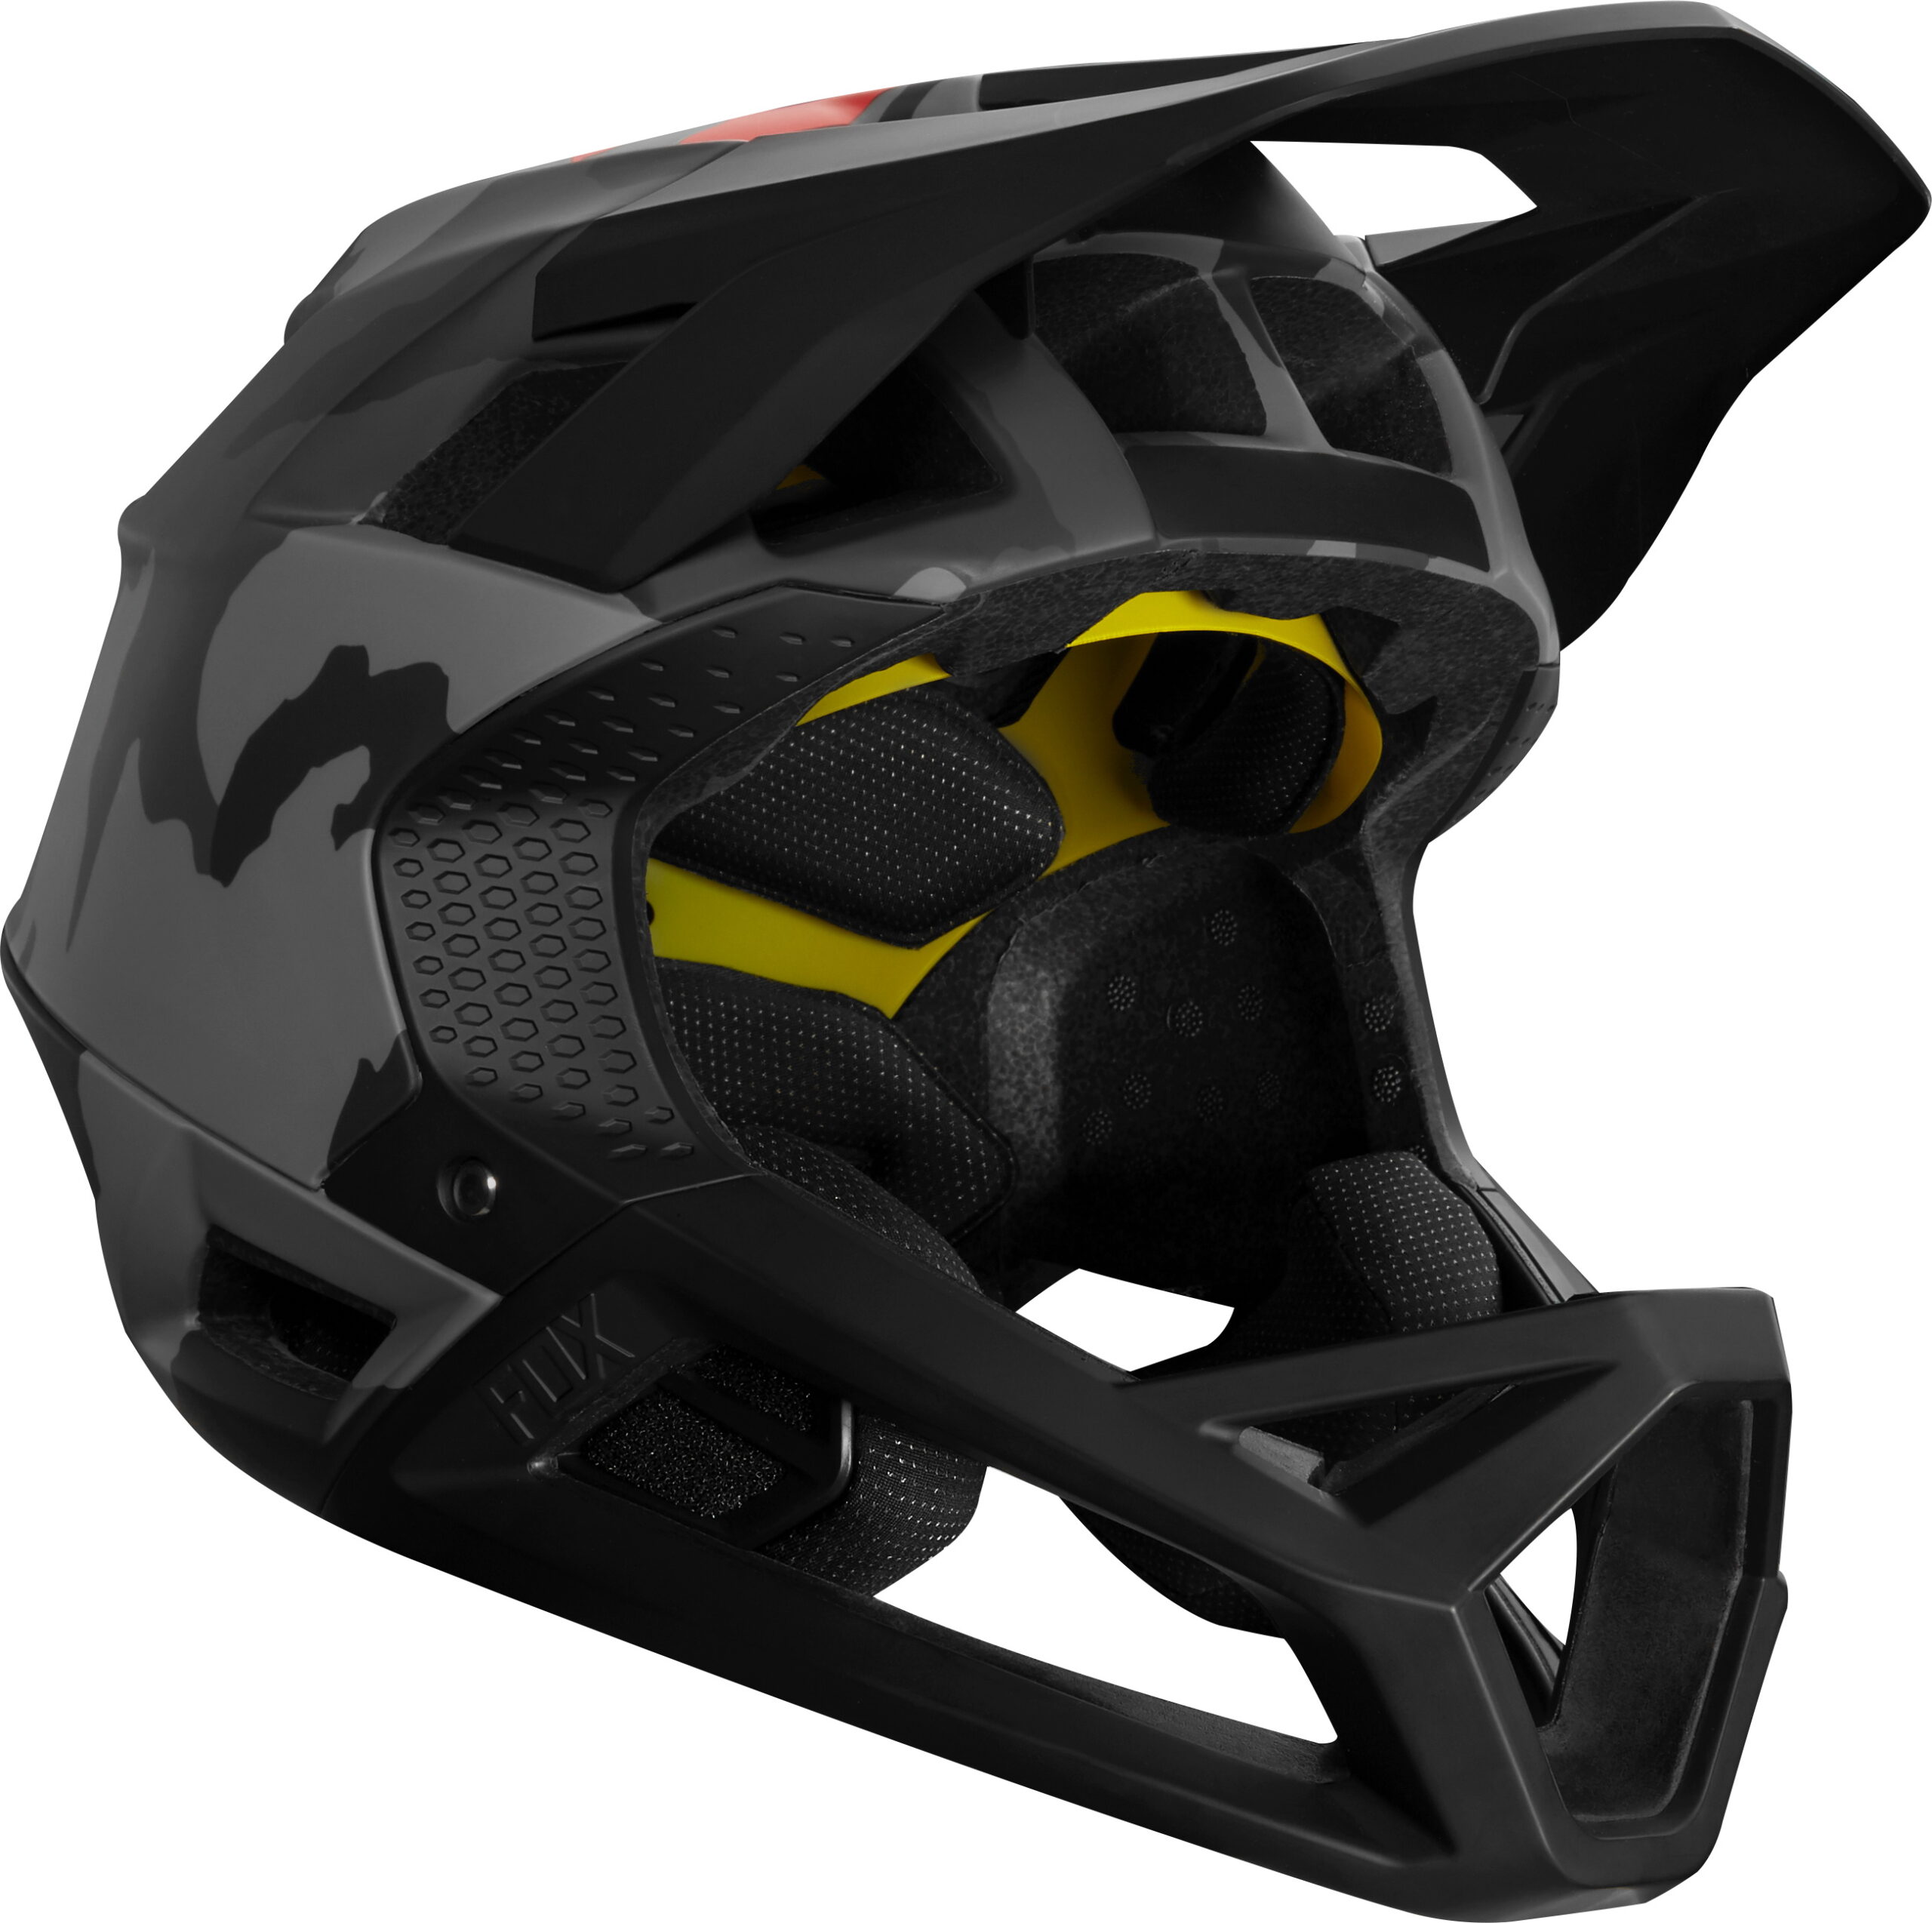 Fx Proframe Helmet Camo Ce Black Camo 26806 247 1 249.00 Scaled 1